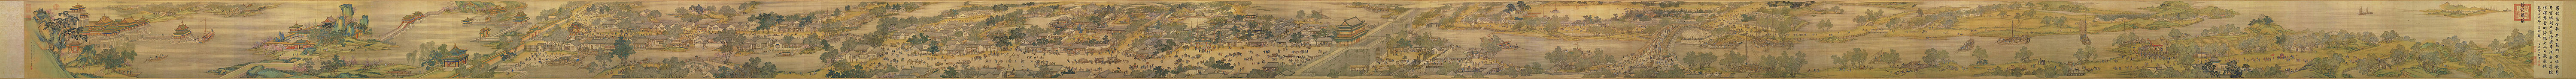 Panorama aus der Qingming-Rolle, aus dem 18. Jahrhundert als Neuauflage eines Originals aus dem 12. Jahrhundert von Zhang Zeduan